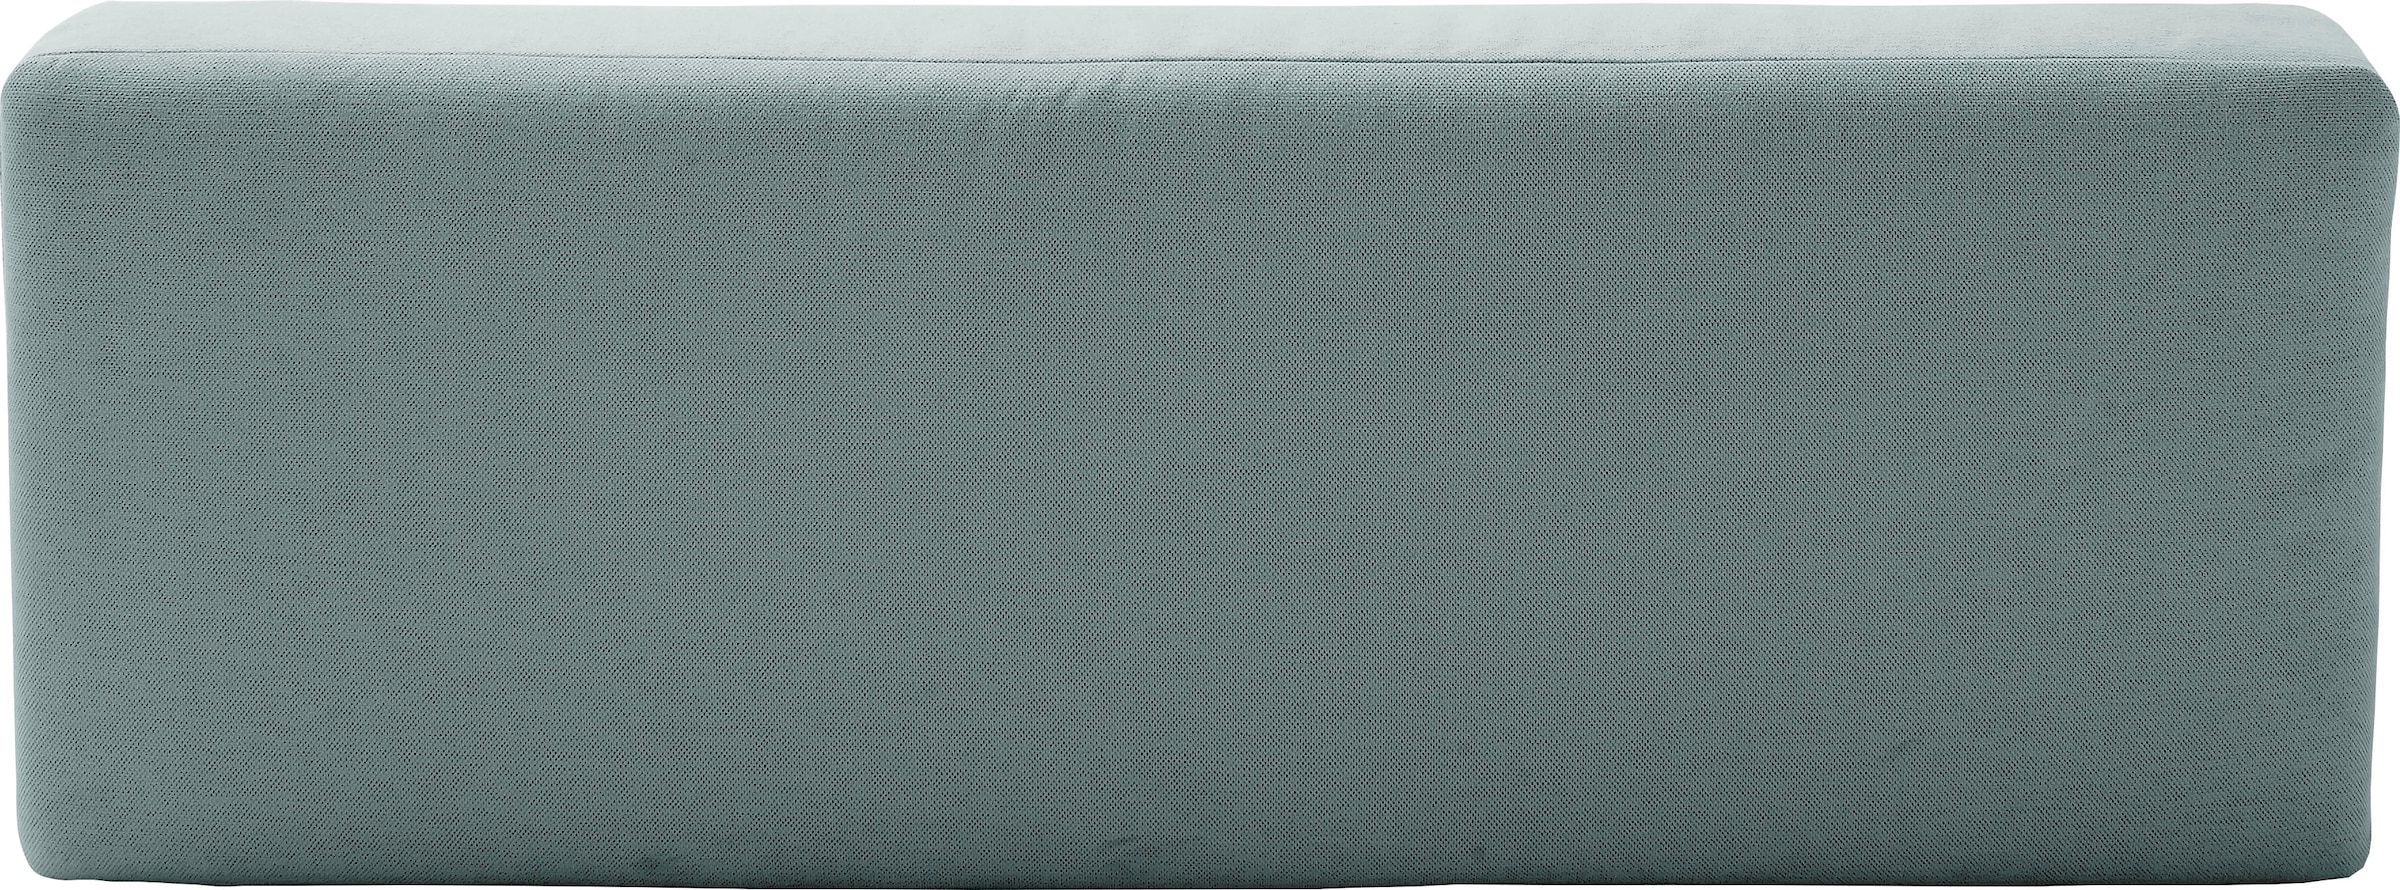 INOSIGN Schlafsofa »Donka Dauerschläfer-geeignet, belastbar bis 270 kg«, ohne Armlehnen, Breite 200 cm, auch in Cord, Tonnentaschen-Federkern